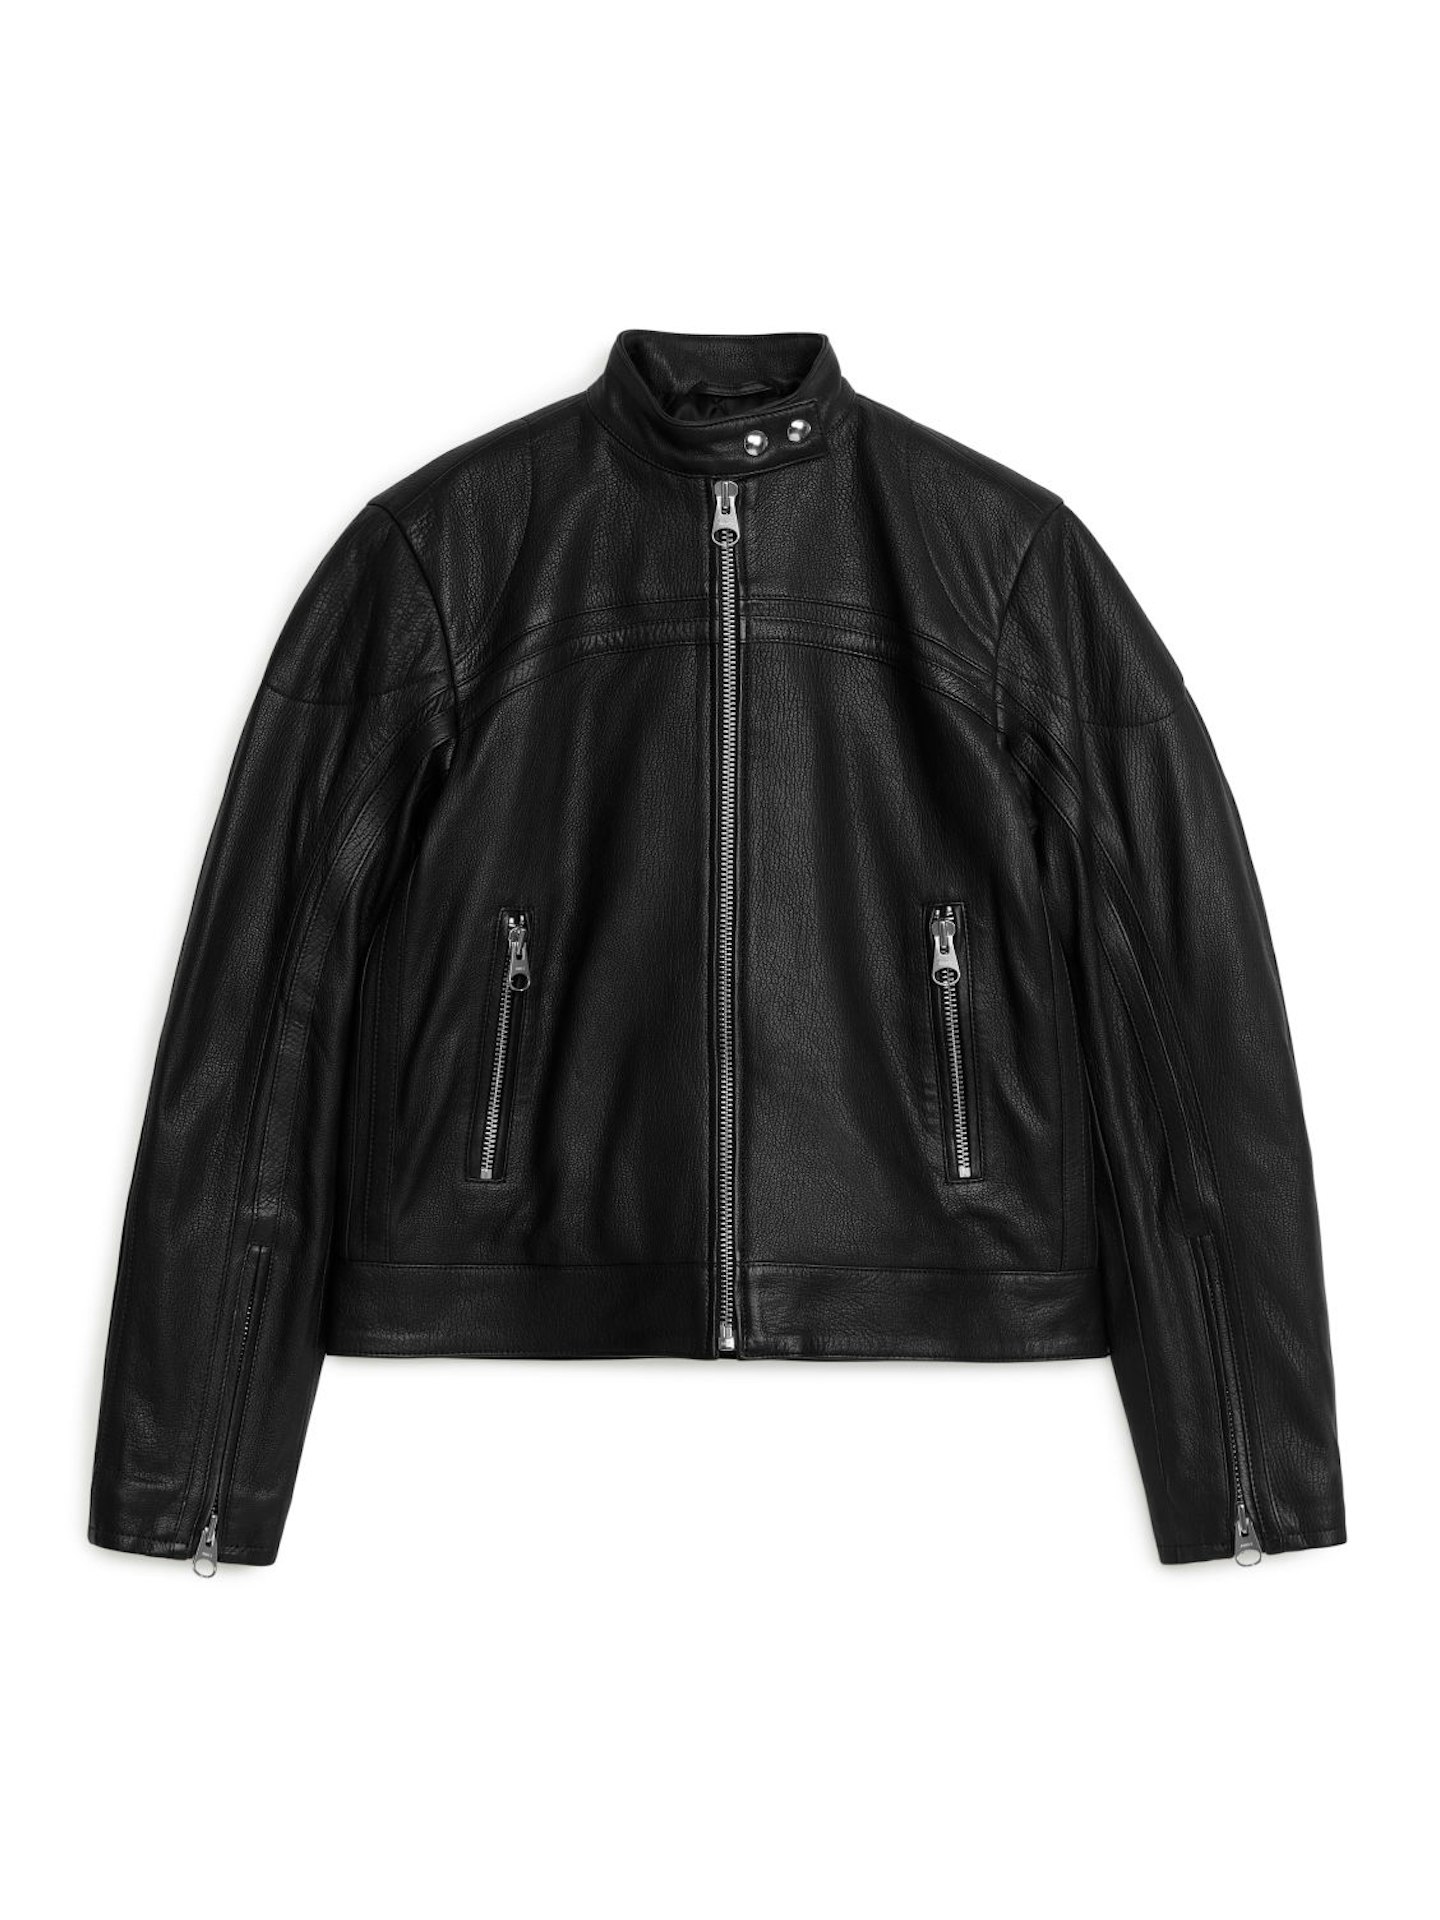 Arket, Racer Leather Jacket